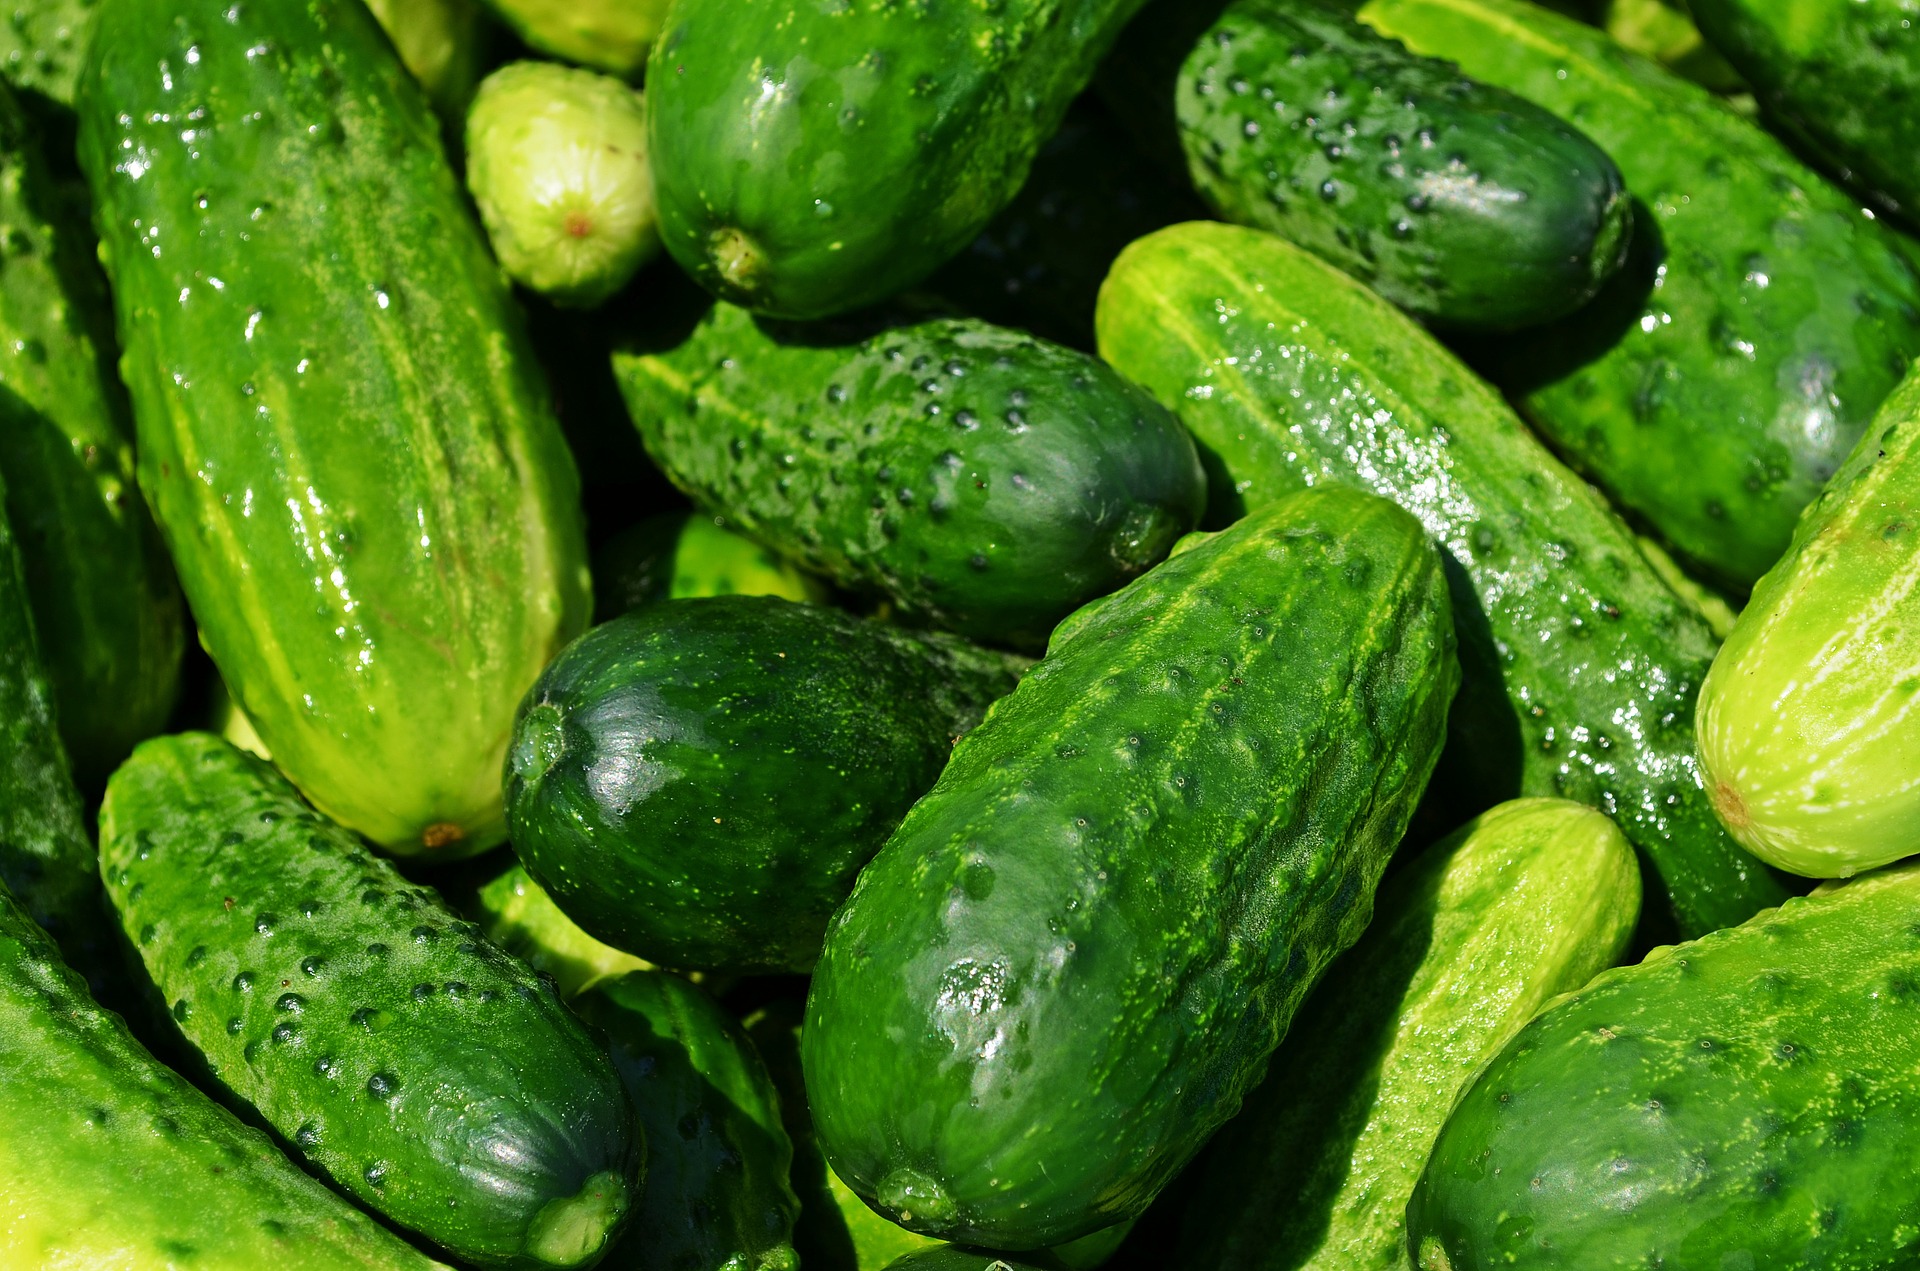 Cucucumbers